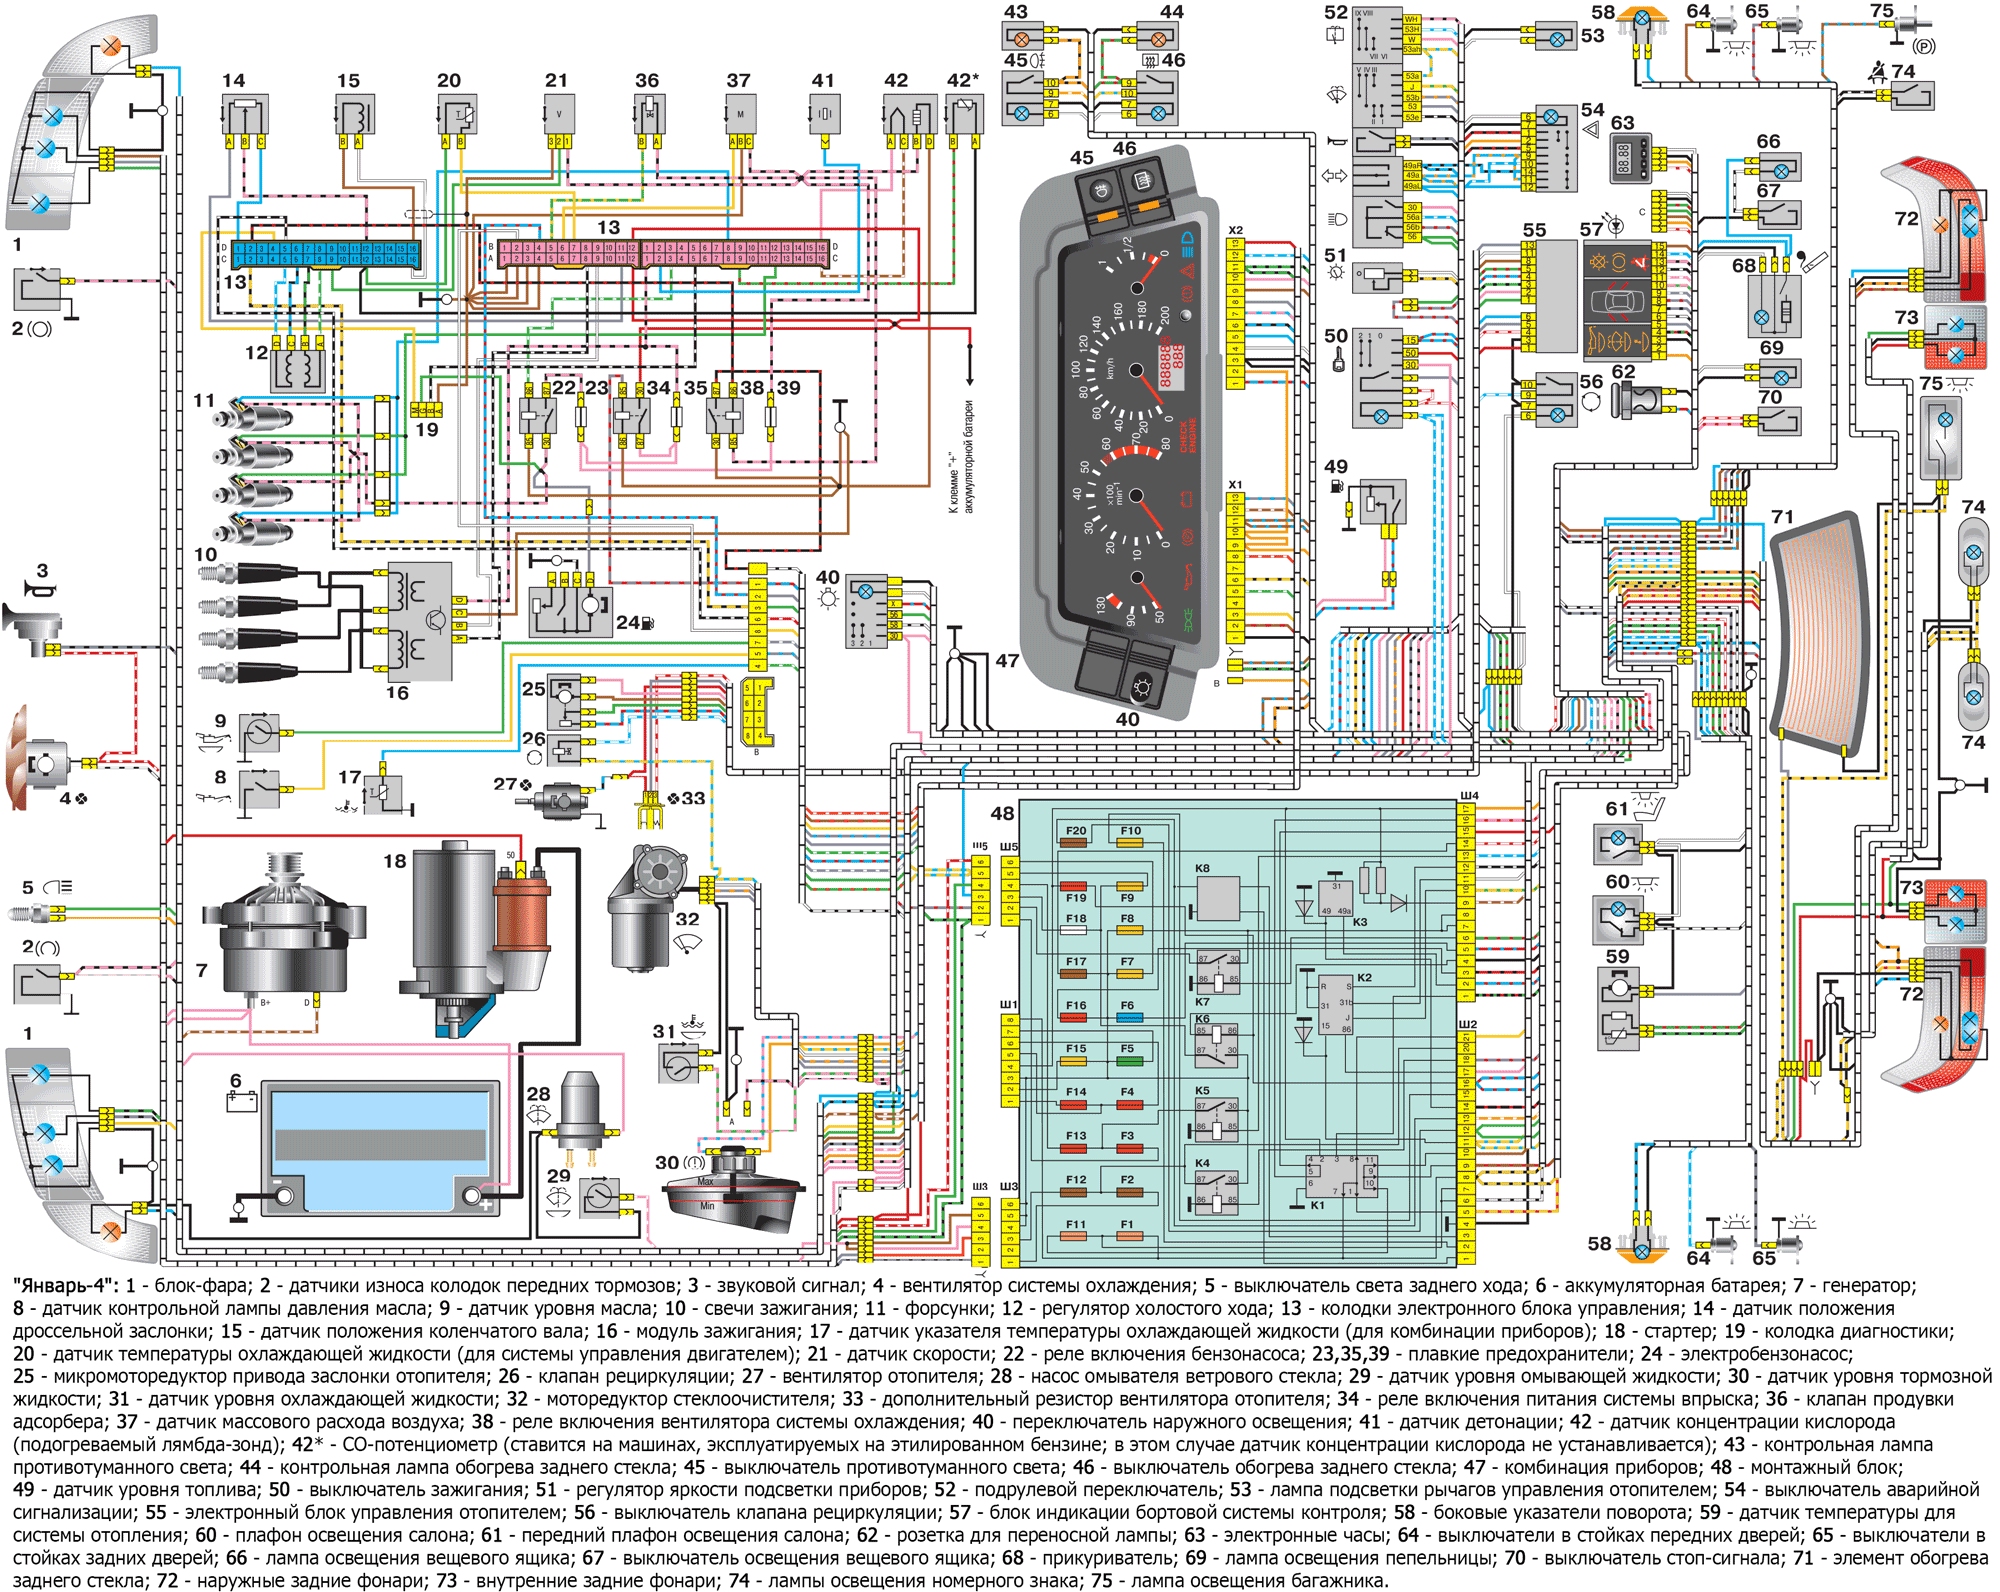 Схема подключения дтож ваз 2114 инжектор 8 клапанов